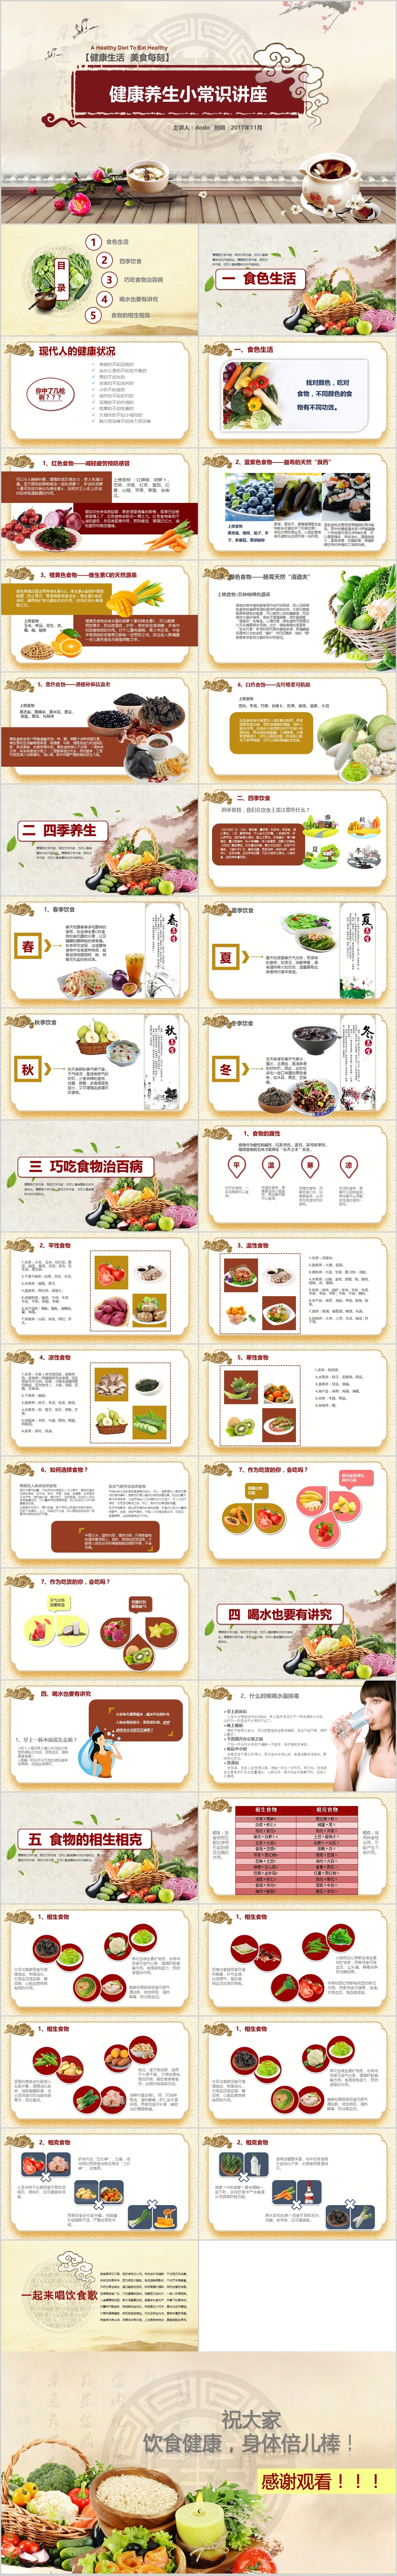 中国风健康饮食知识营养饮食与养生讲座培训健康管理ppt模板